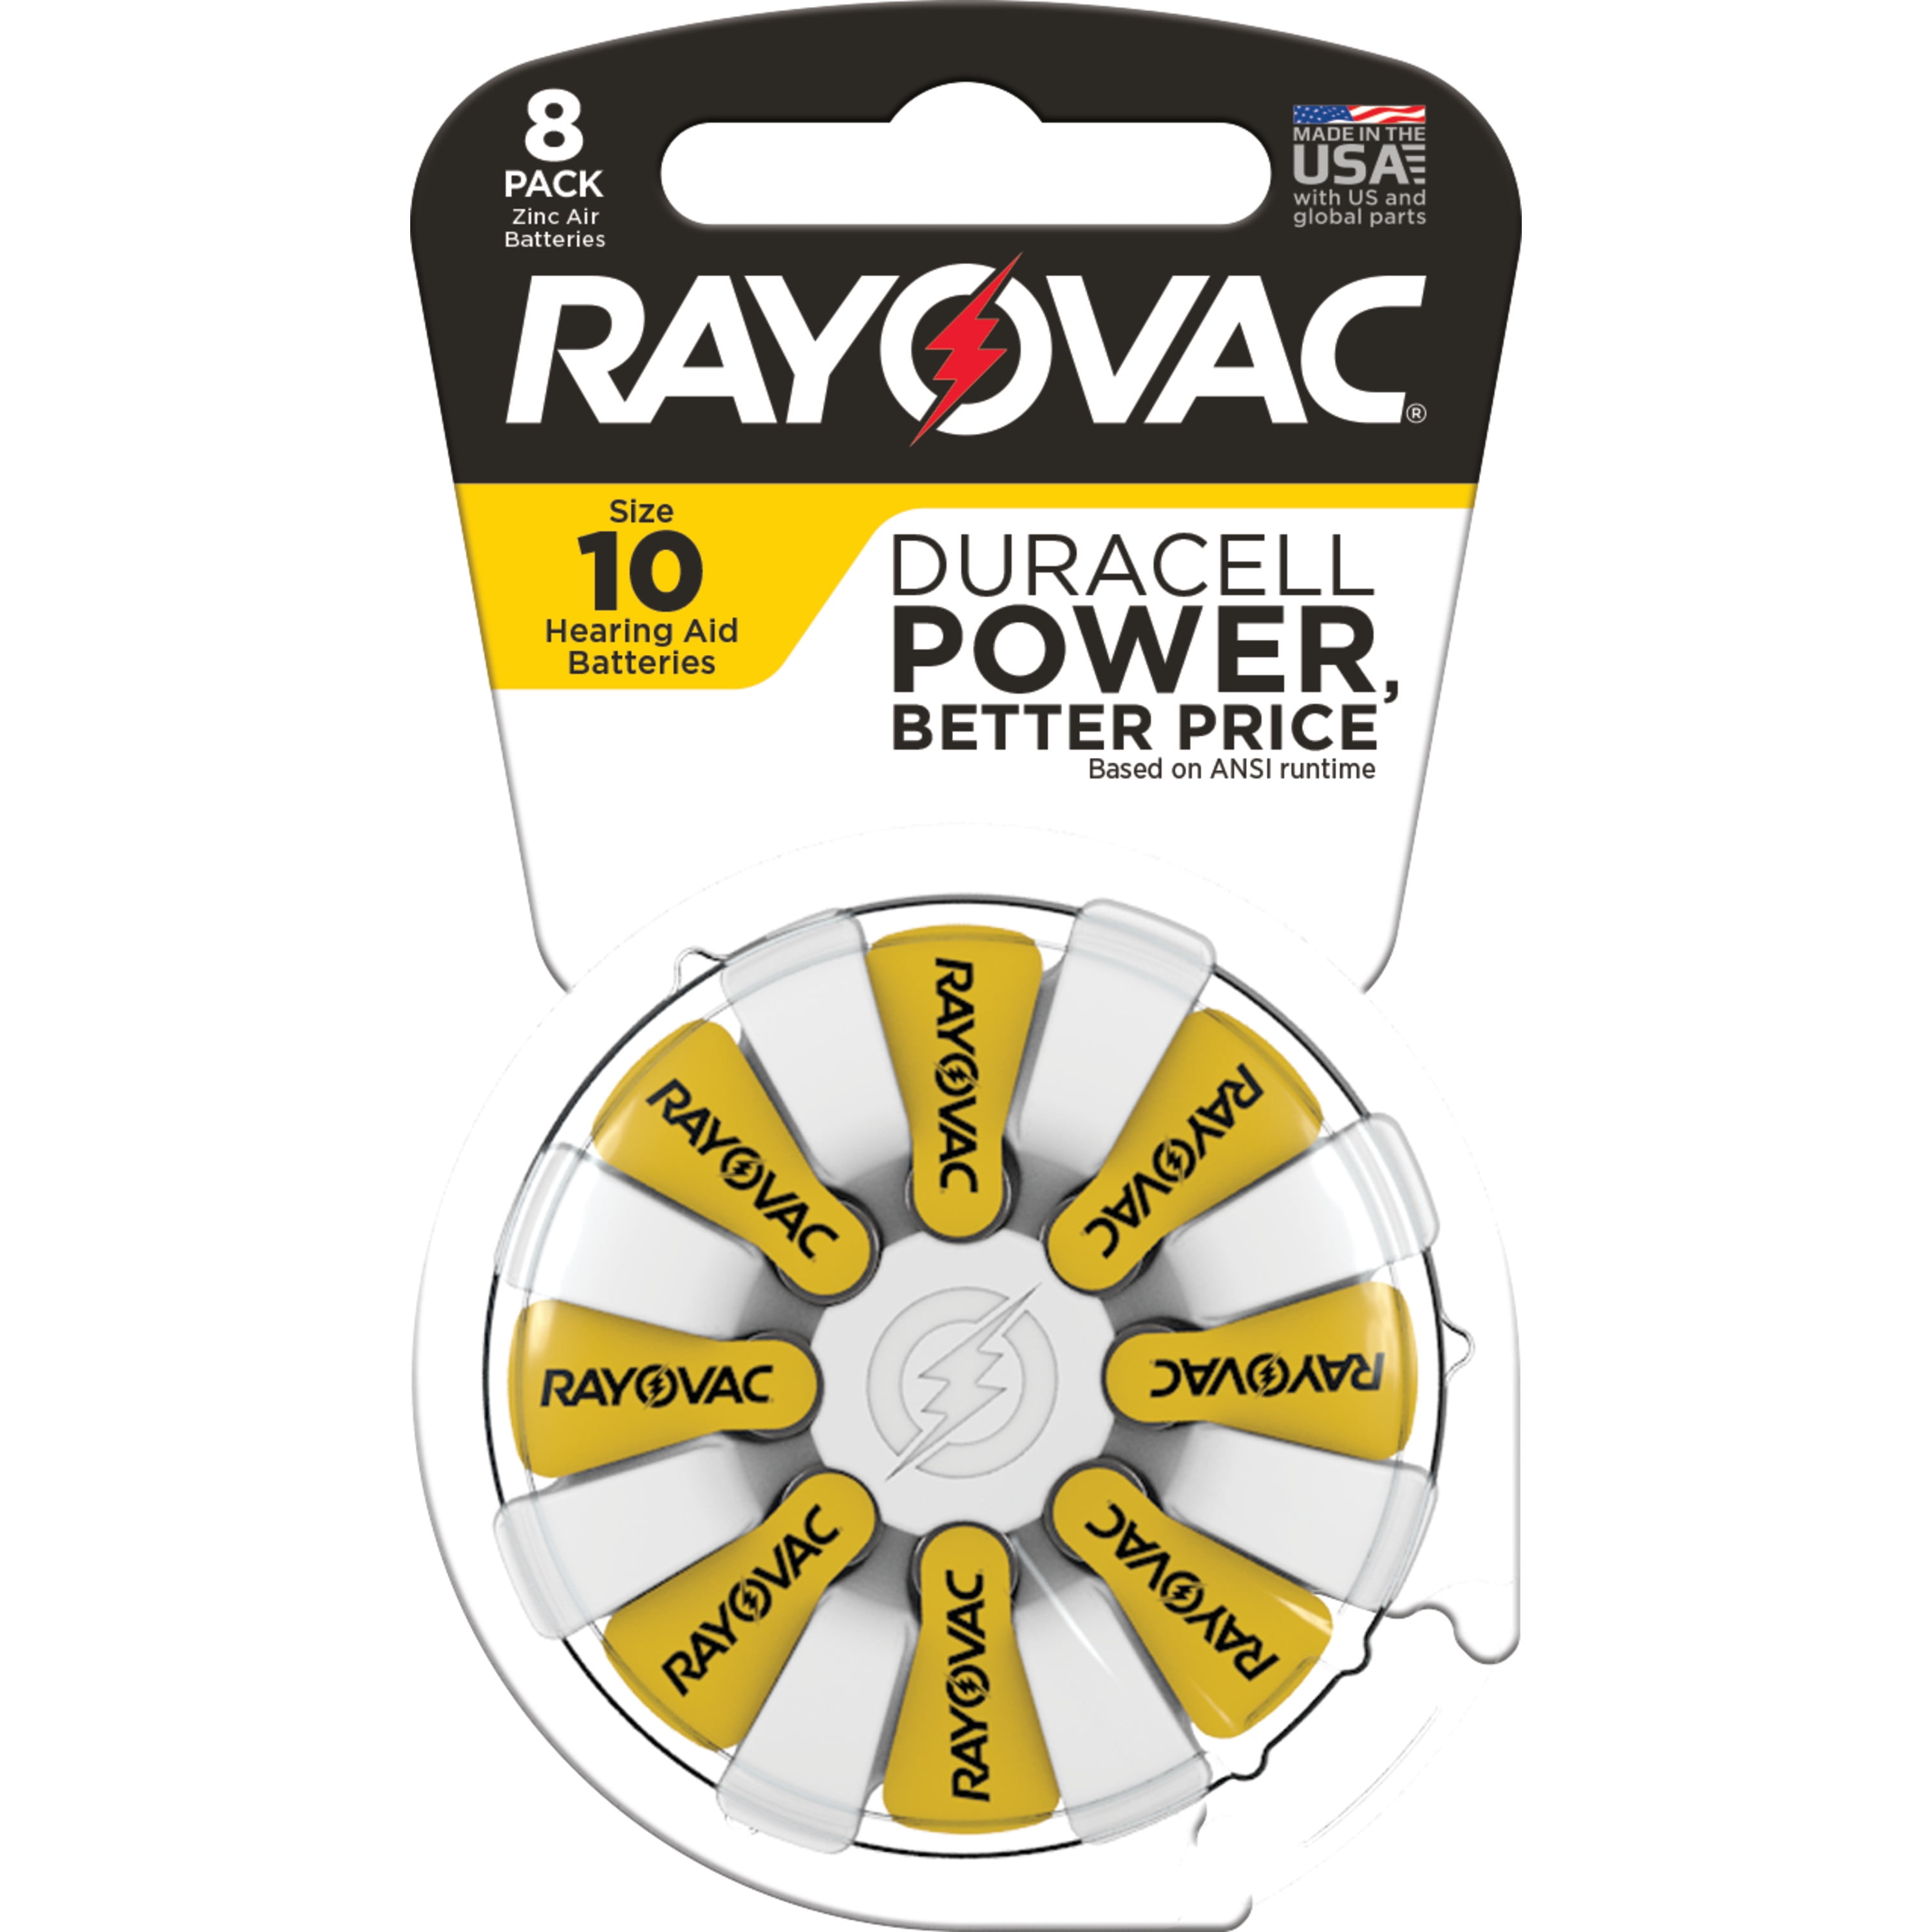 Igangværende tæmme Klimaanlæg Rayovac Size 10 Hearing Aid Batteries (8 Pack), Size 10 Batteries -  Walmart.com